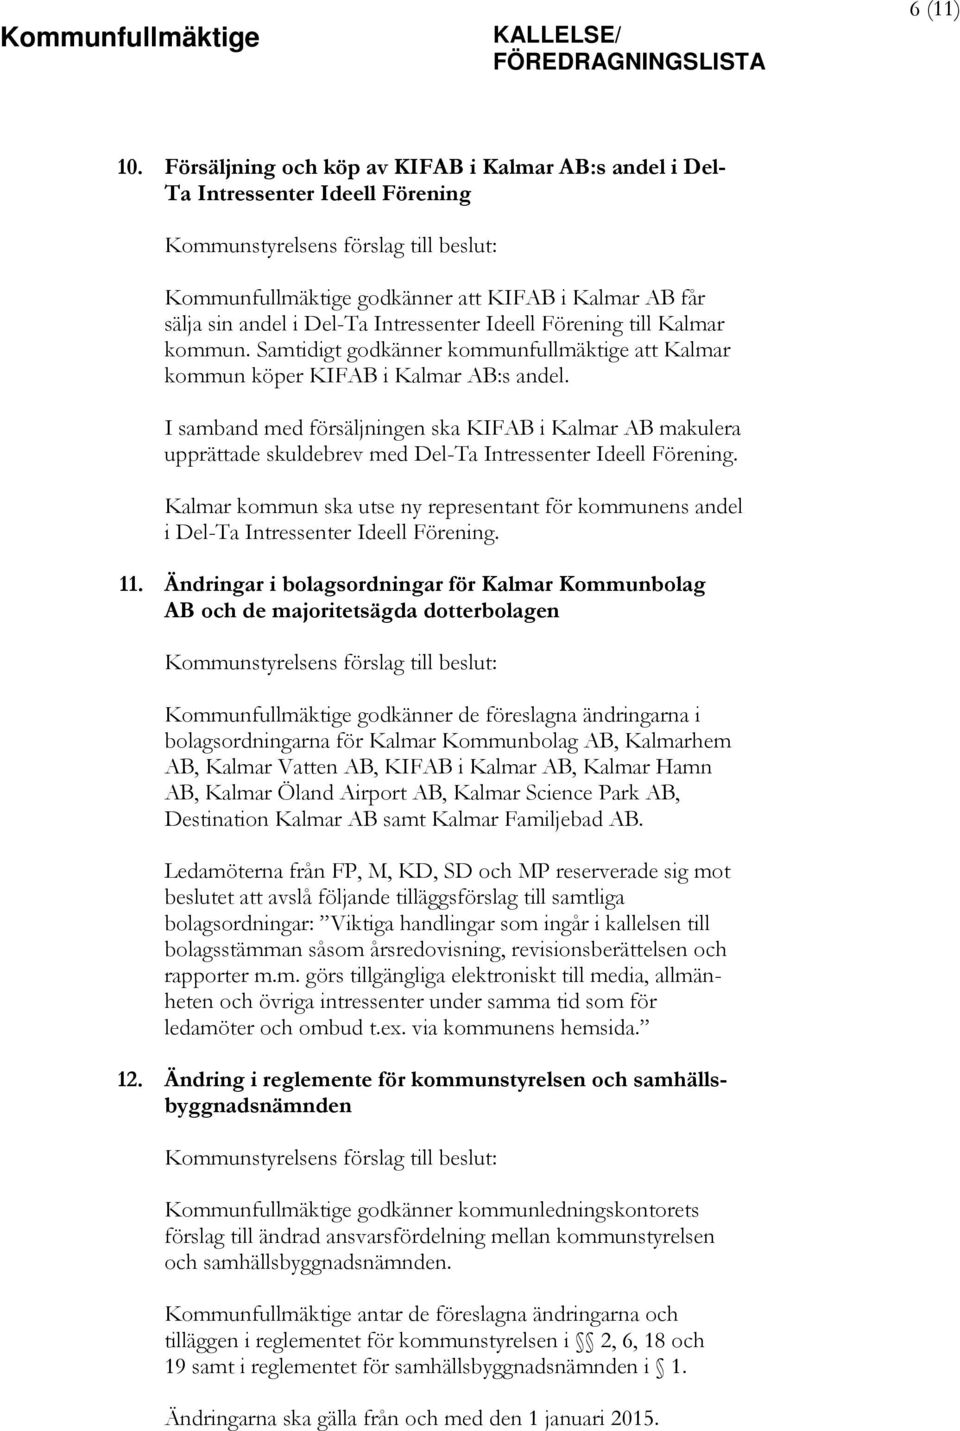 Del-Ta Intressenter Ideell Förening till Kalmar kommun. Samtidigt godkänner kommunfullmäktige att Kalmar kommun köper KIFAB i Kalmar AB:s andel.